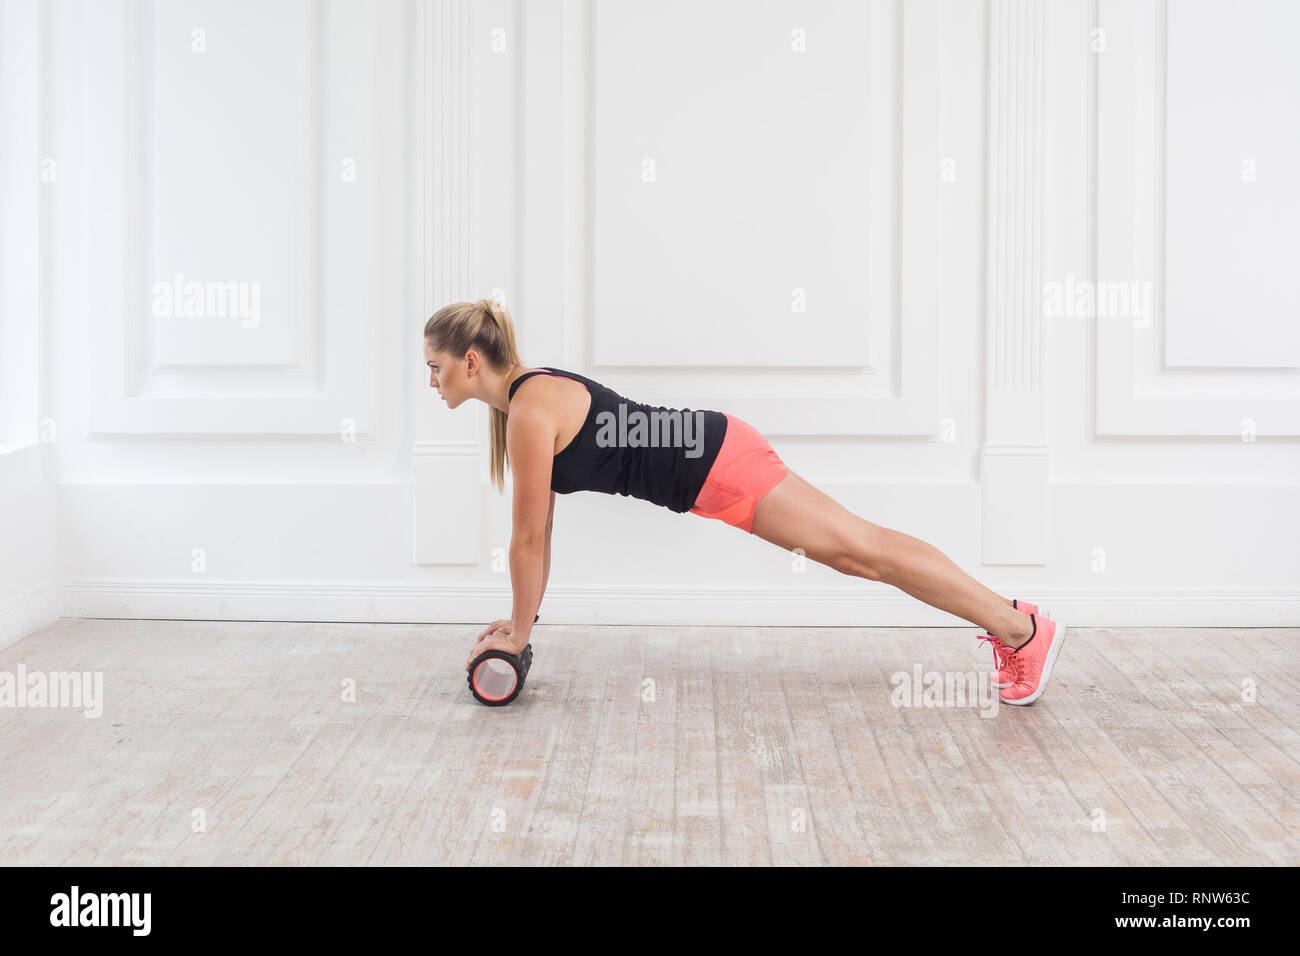 Profil Seitenansicht Portrait von athletischen blonde junge Frau in Passform mit schaumstoffrolle im Fitnessstudio Workout zu Verlust Gewicht zu und tun Plank. Rehabilitati Stockfoto